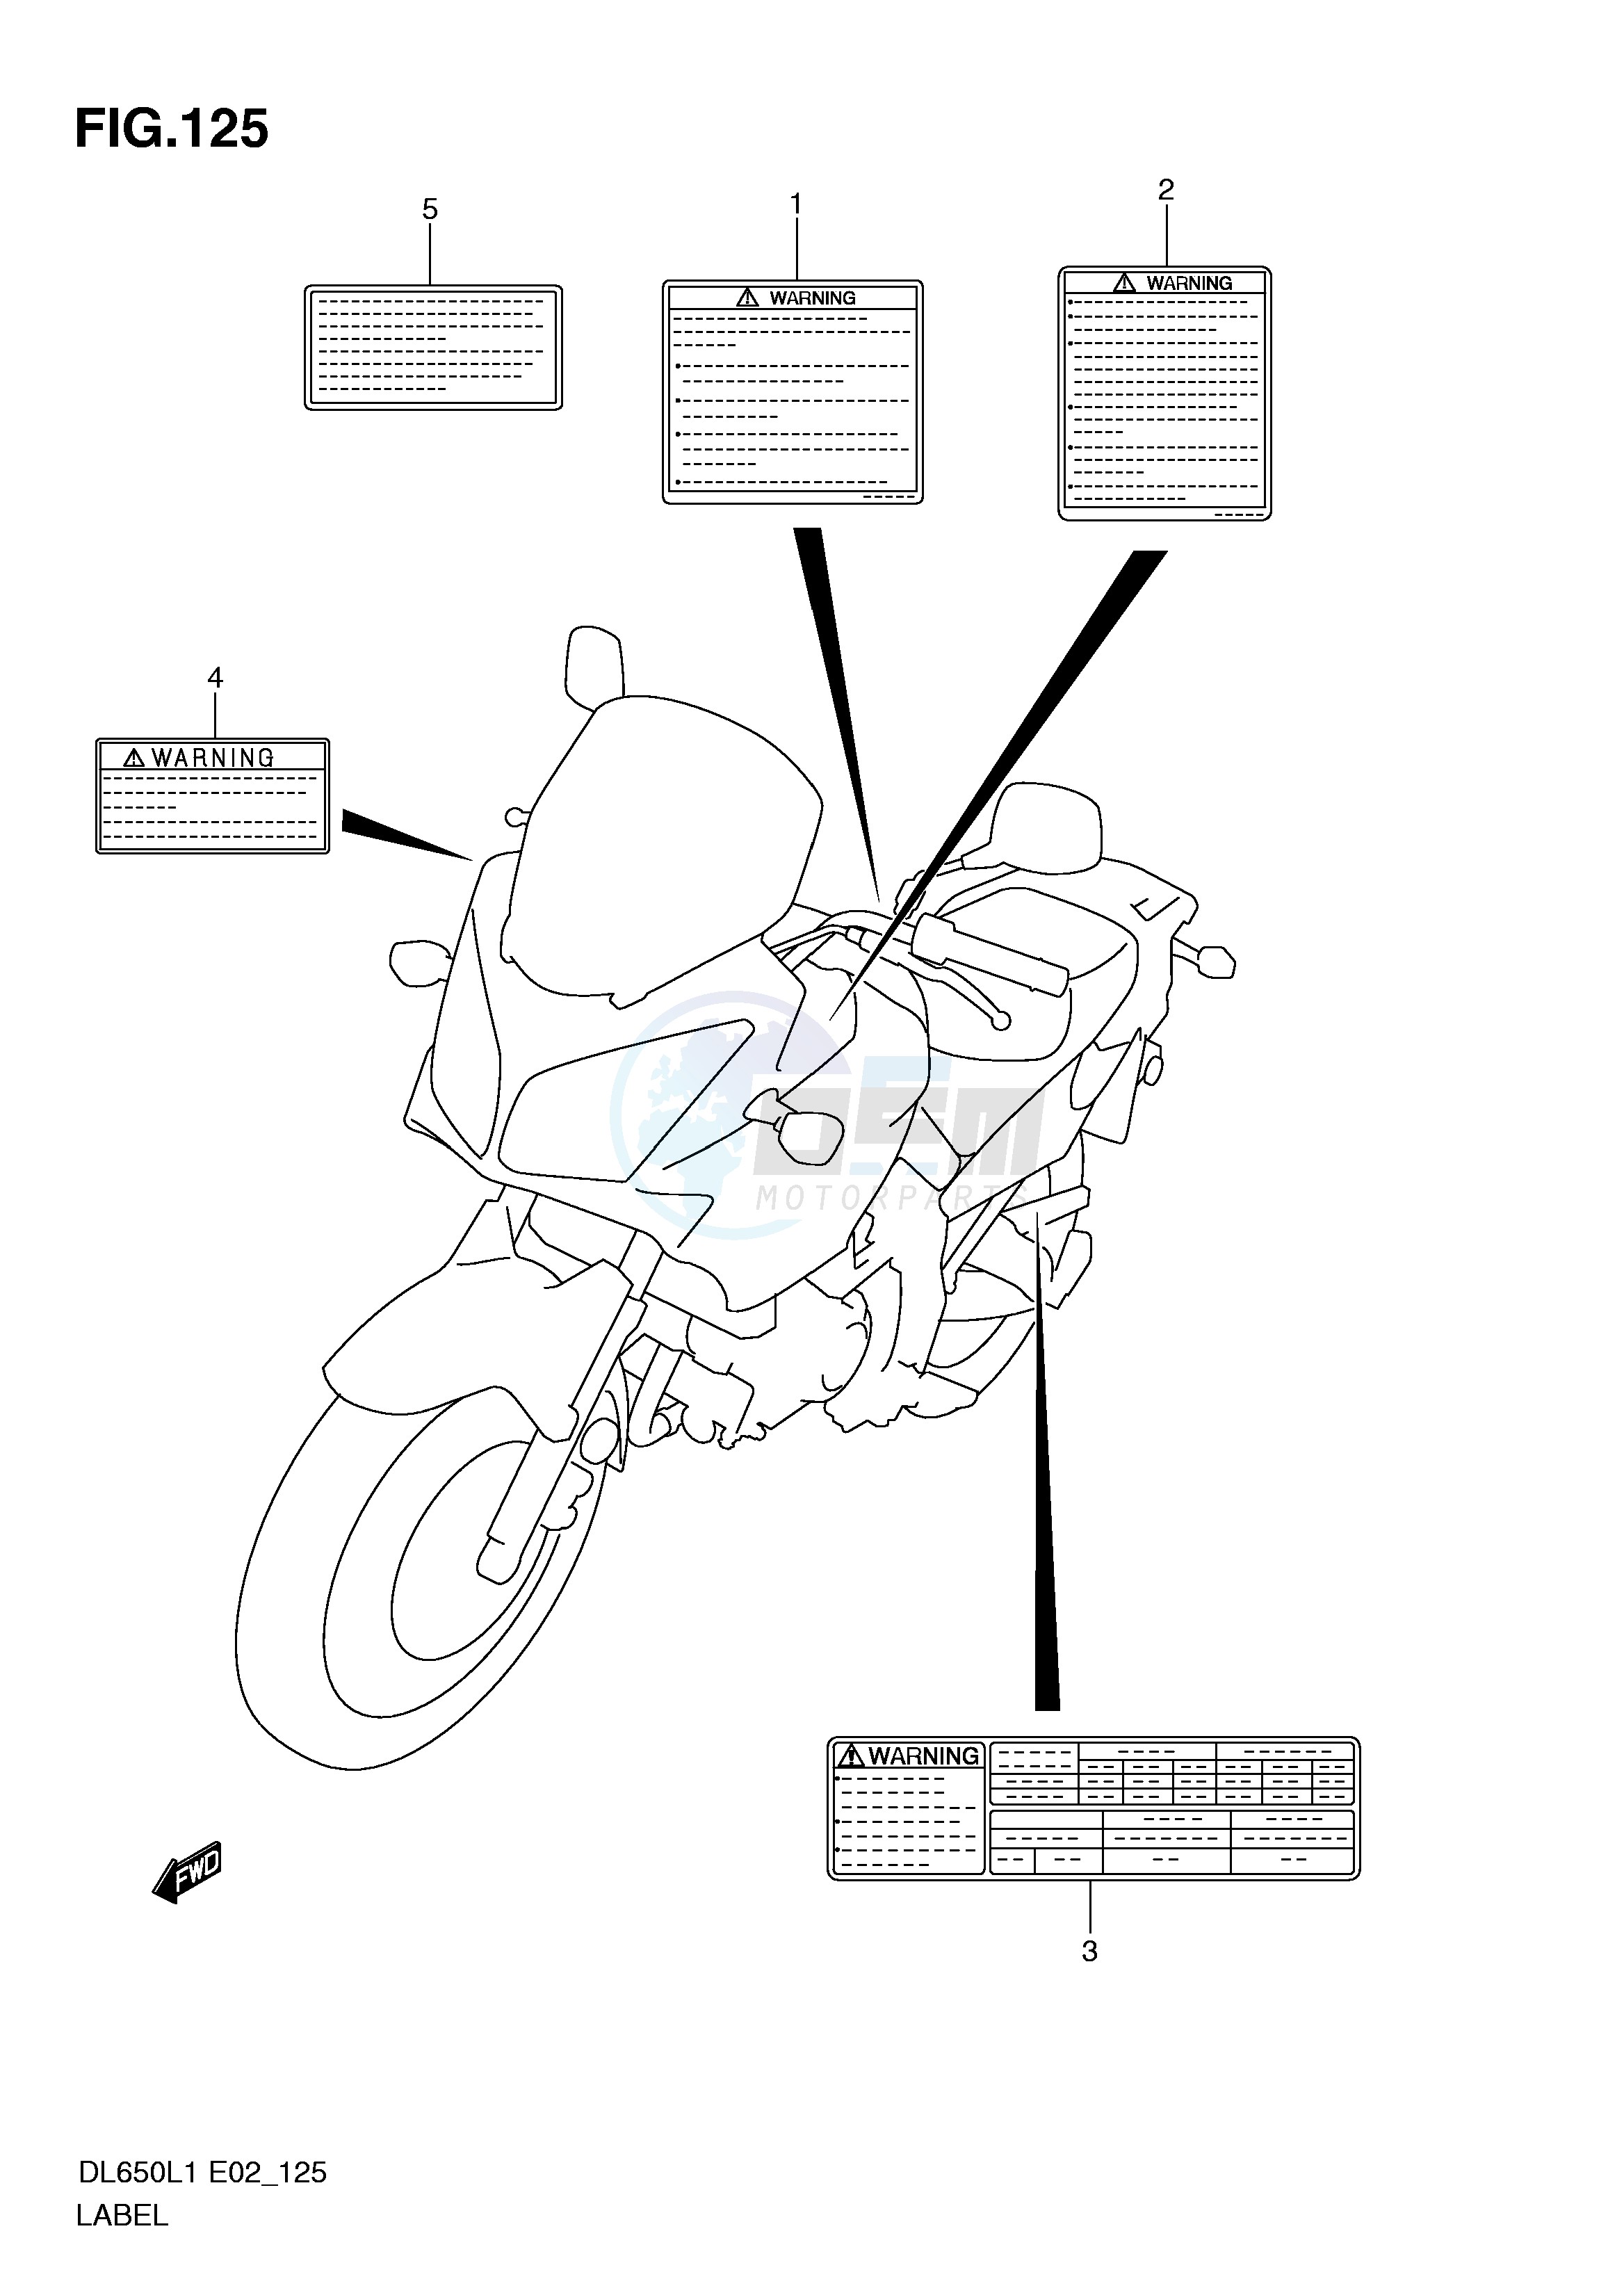 LABEL (DL650AL1 E19) blueprint